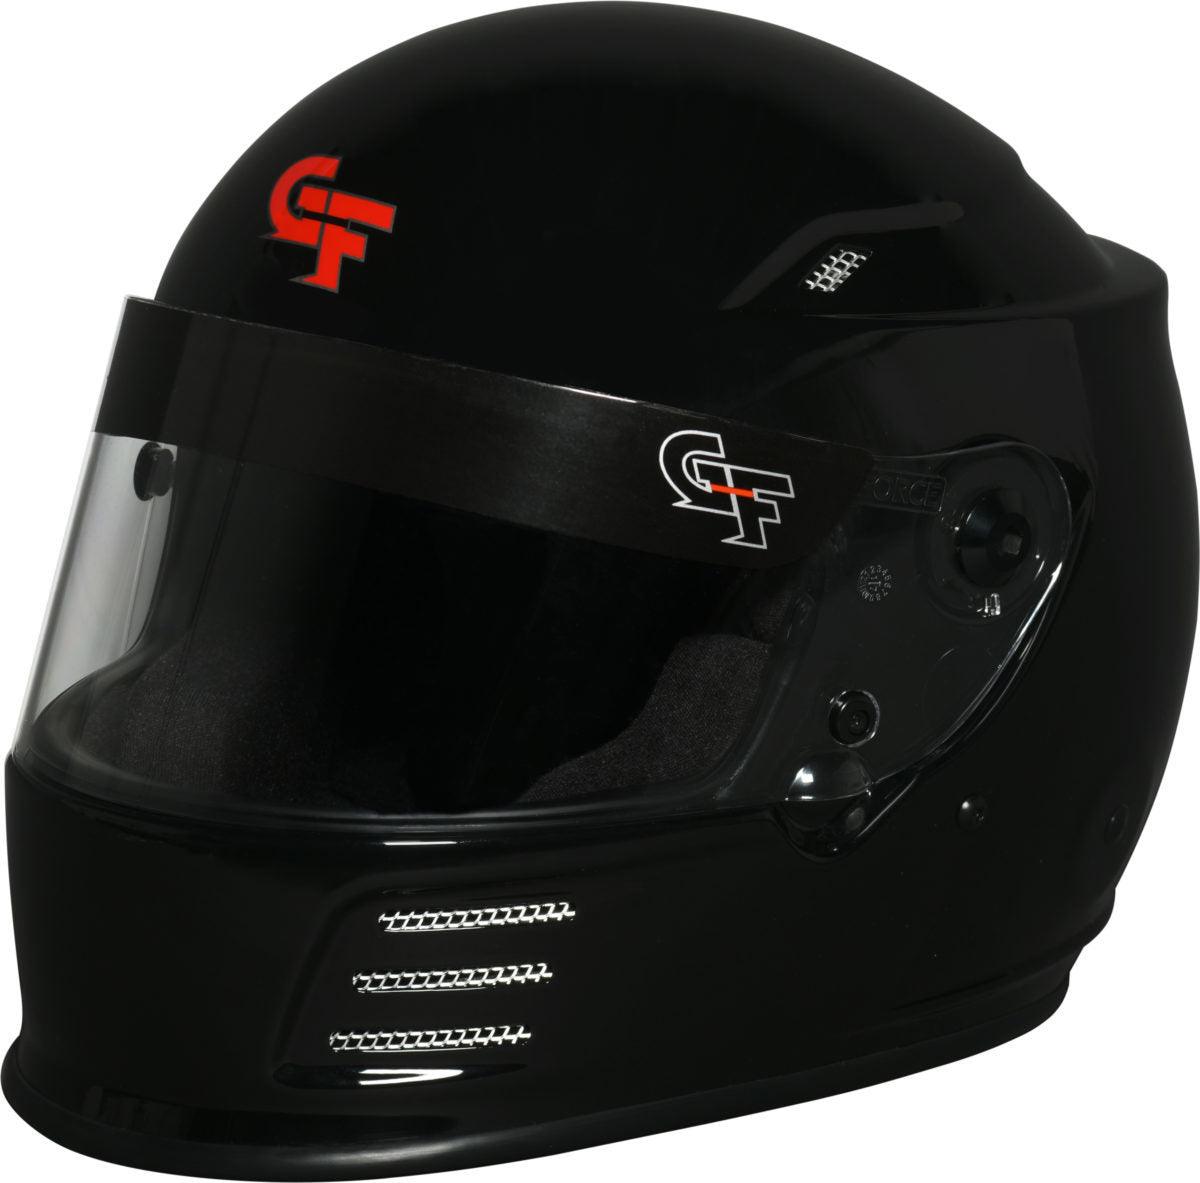 Helmet Revo Medium Black SA2020 - Burlile Performance Products